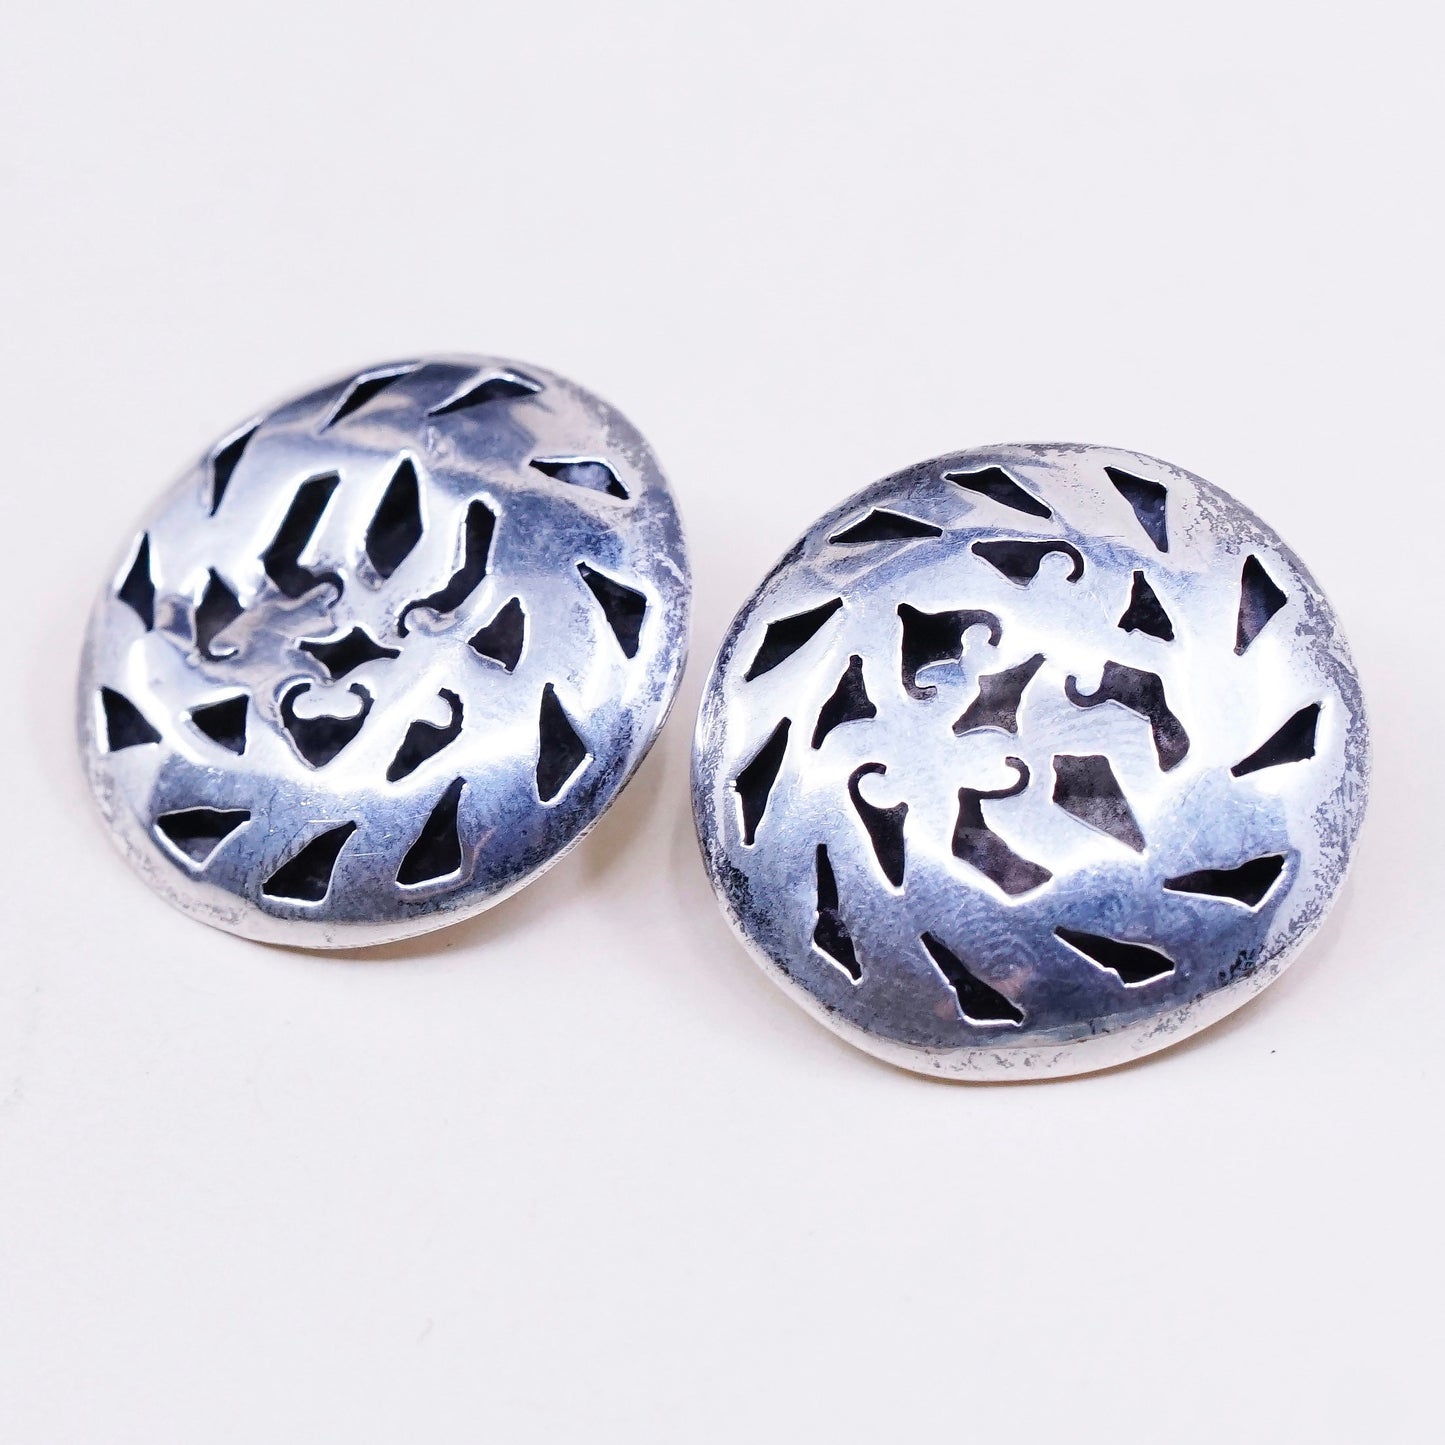 vtg sterling silver handmade earrings, 925 clip on earrings w/ pattern cut out